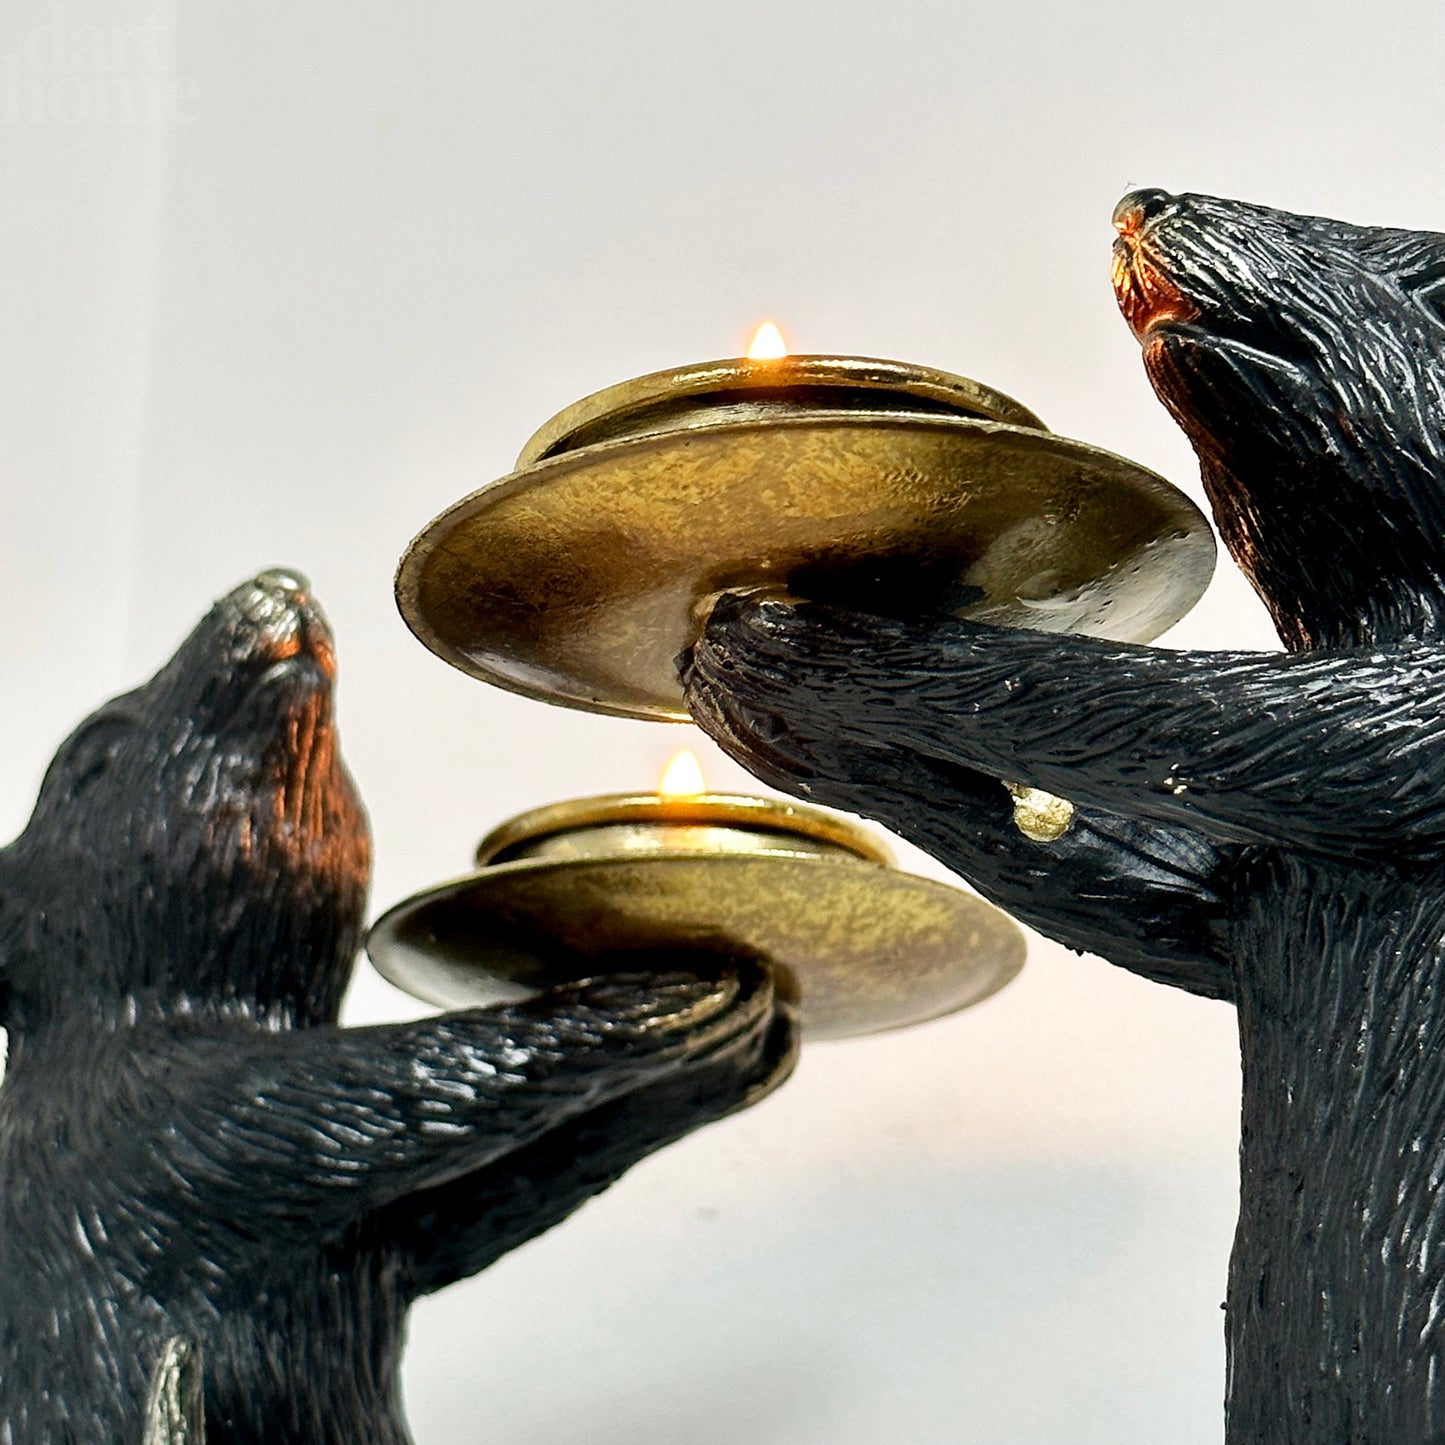 Schwarz-goldenes Maus-Kerzenhalter-Paar